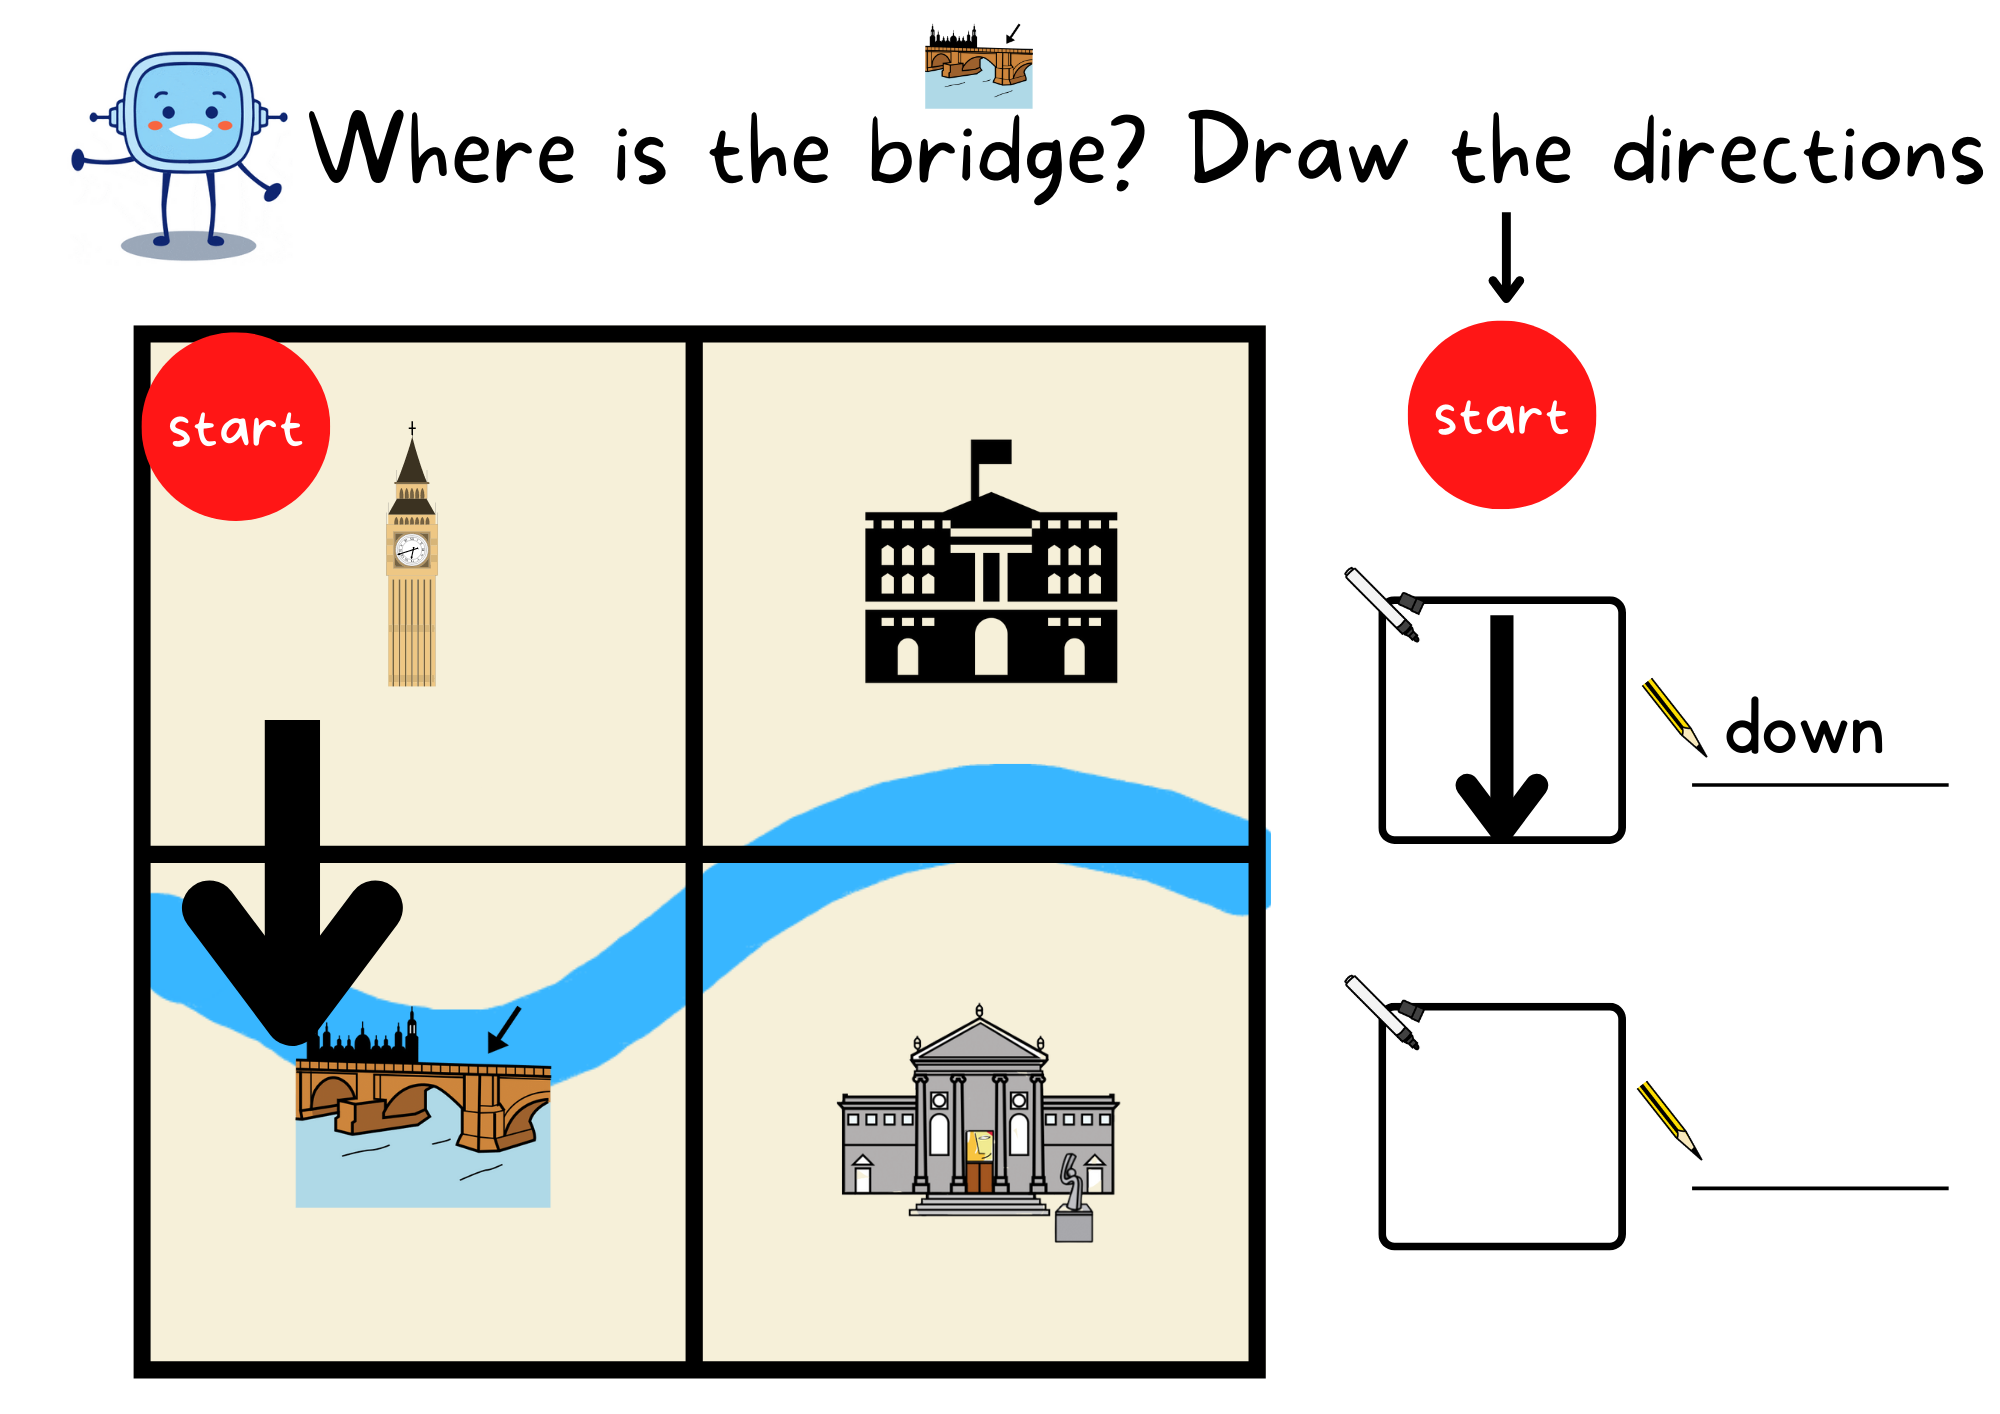 La imagen muestra un mapa cuadriculado y las direcciones que se tienen que seguir para llegar al puente, a modo de ejemplo.